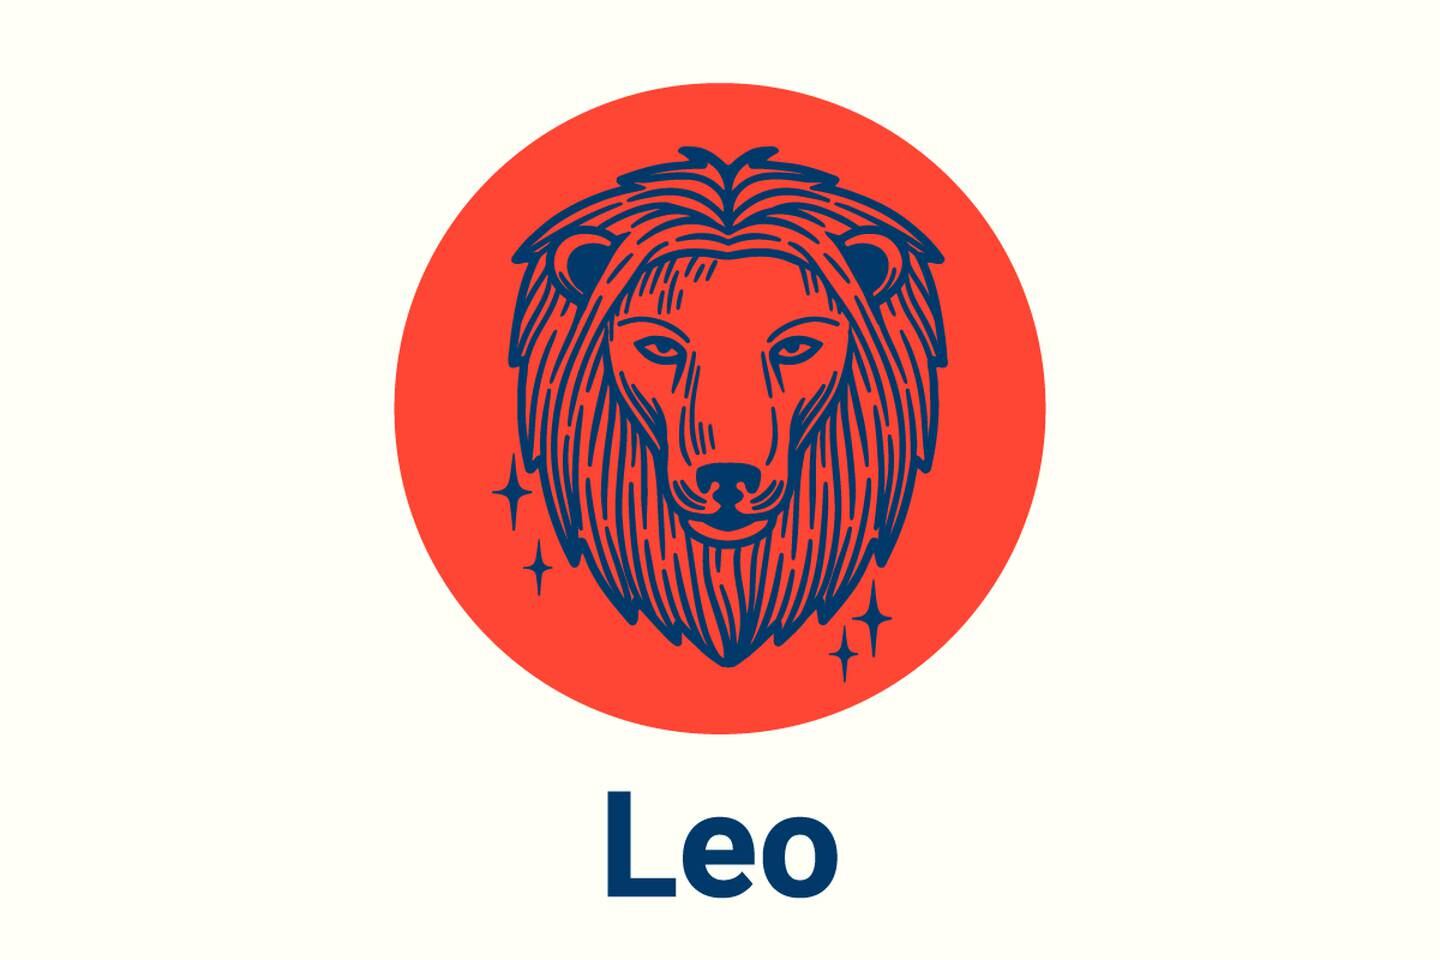 Imagen con el símbolo del signo zodiacal Leo.